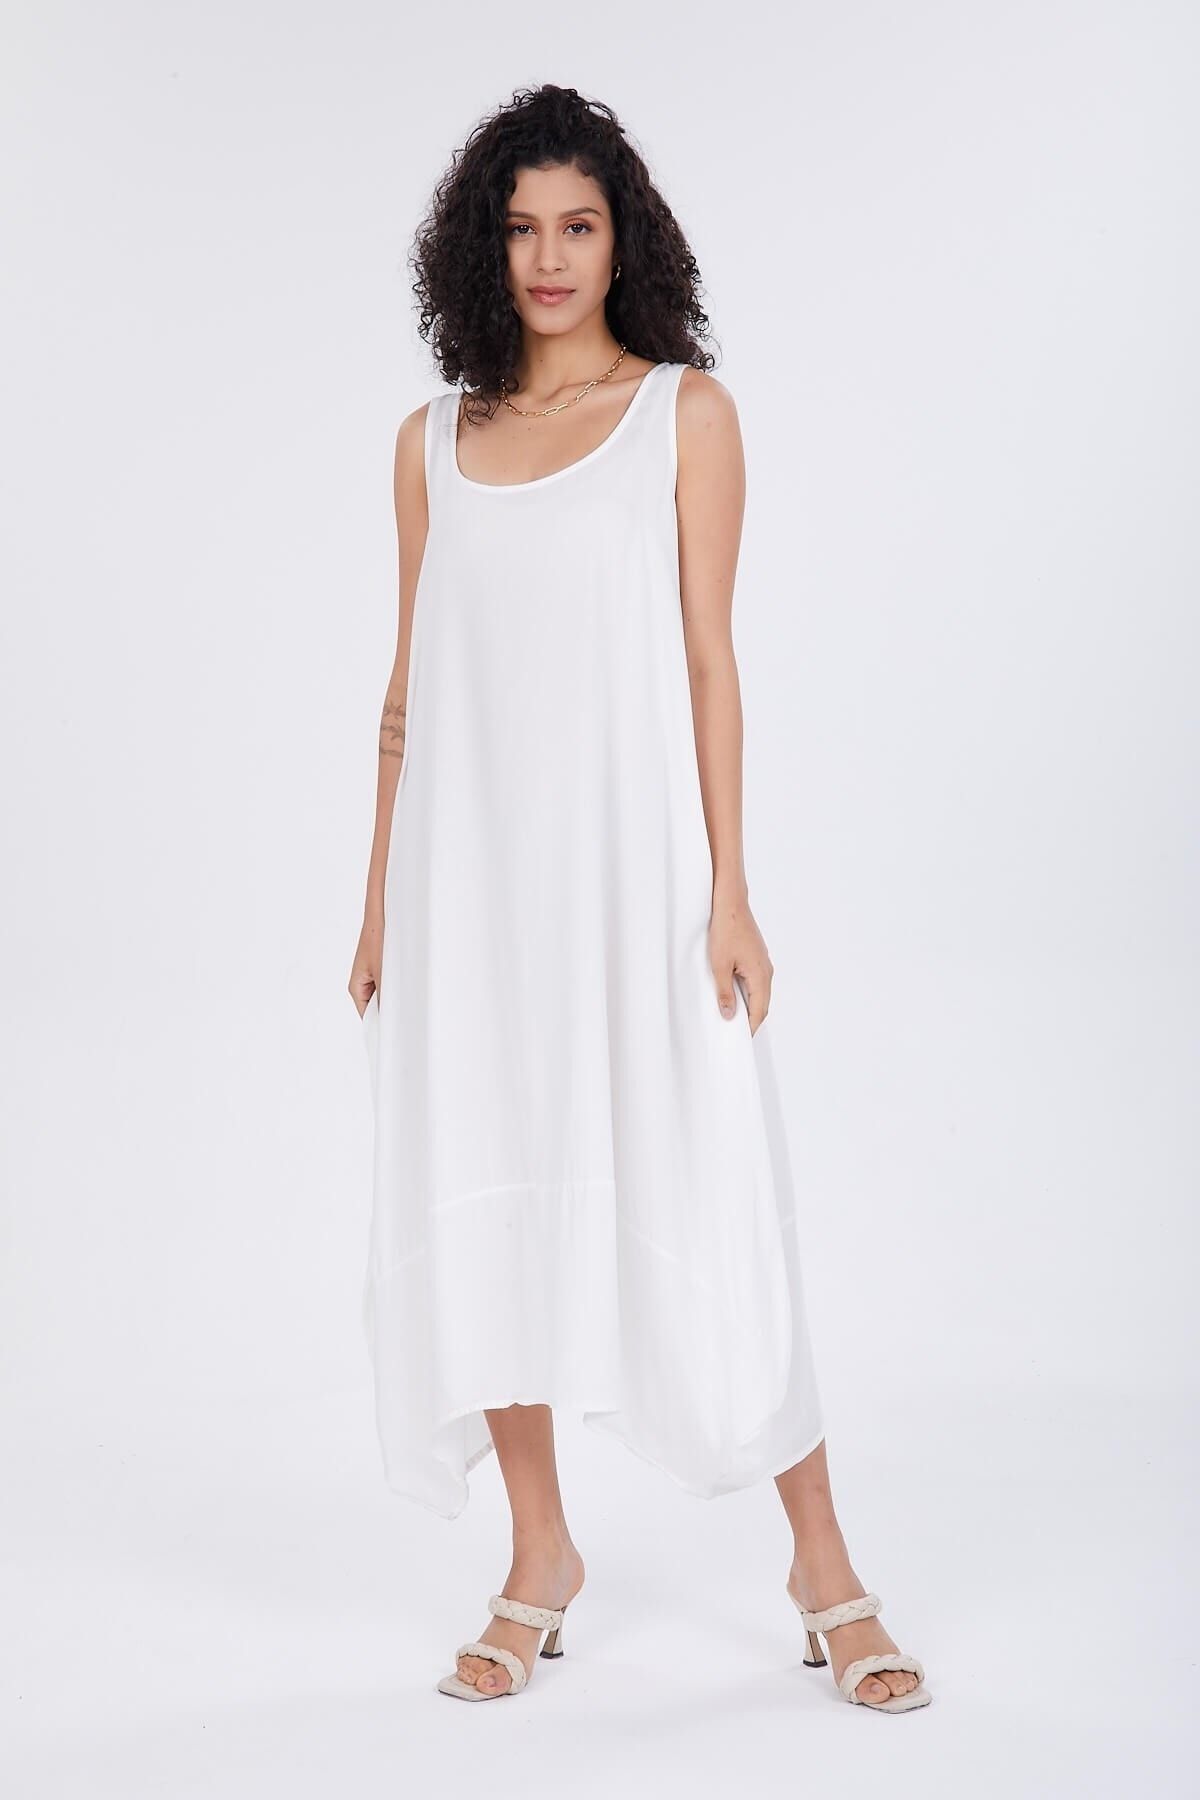 Luisido Beyaz Sıfır Kol Salaş Balon Elbise Fiyatı, Yorumları - Trendyol